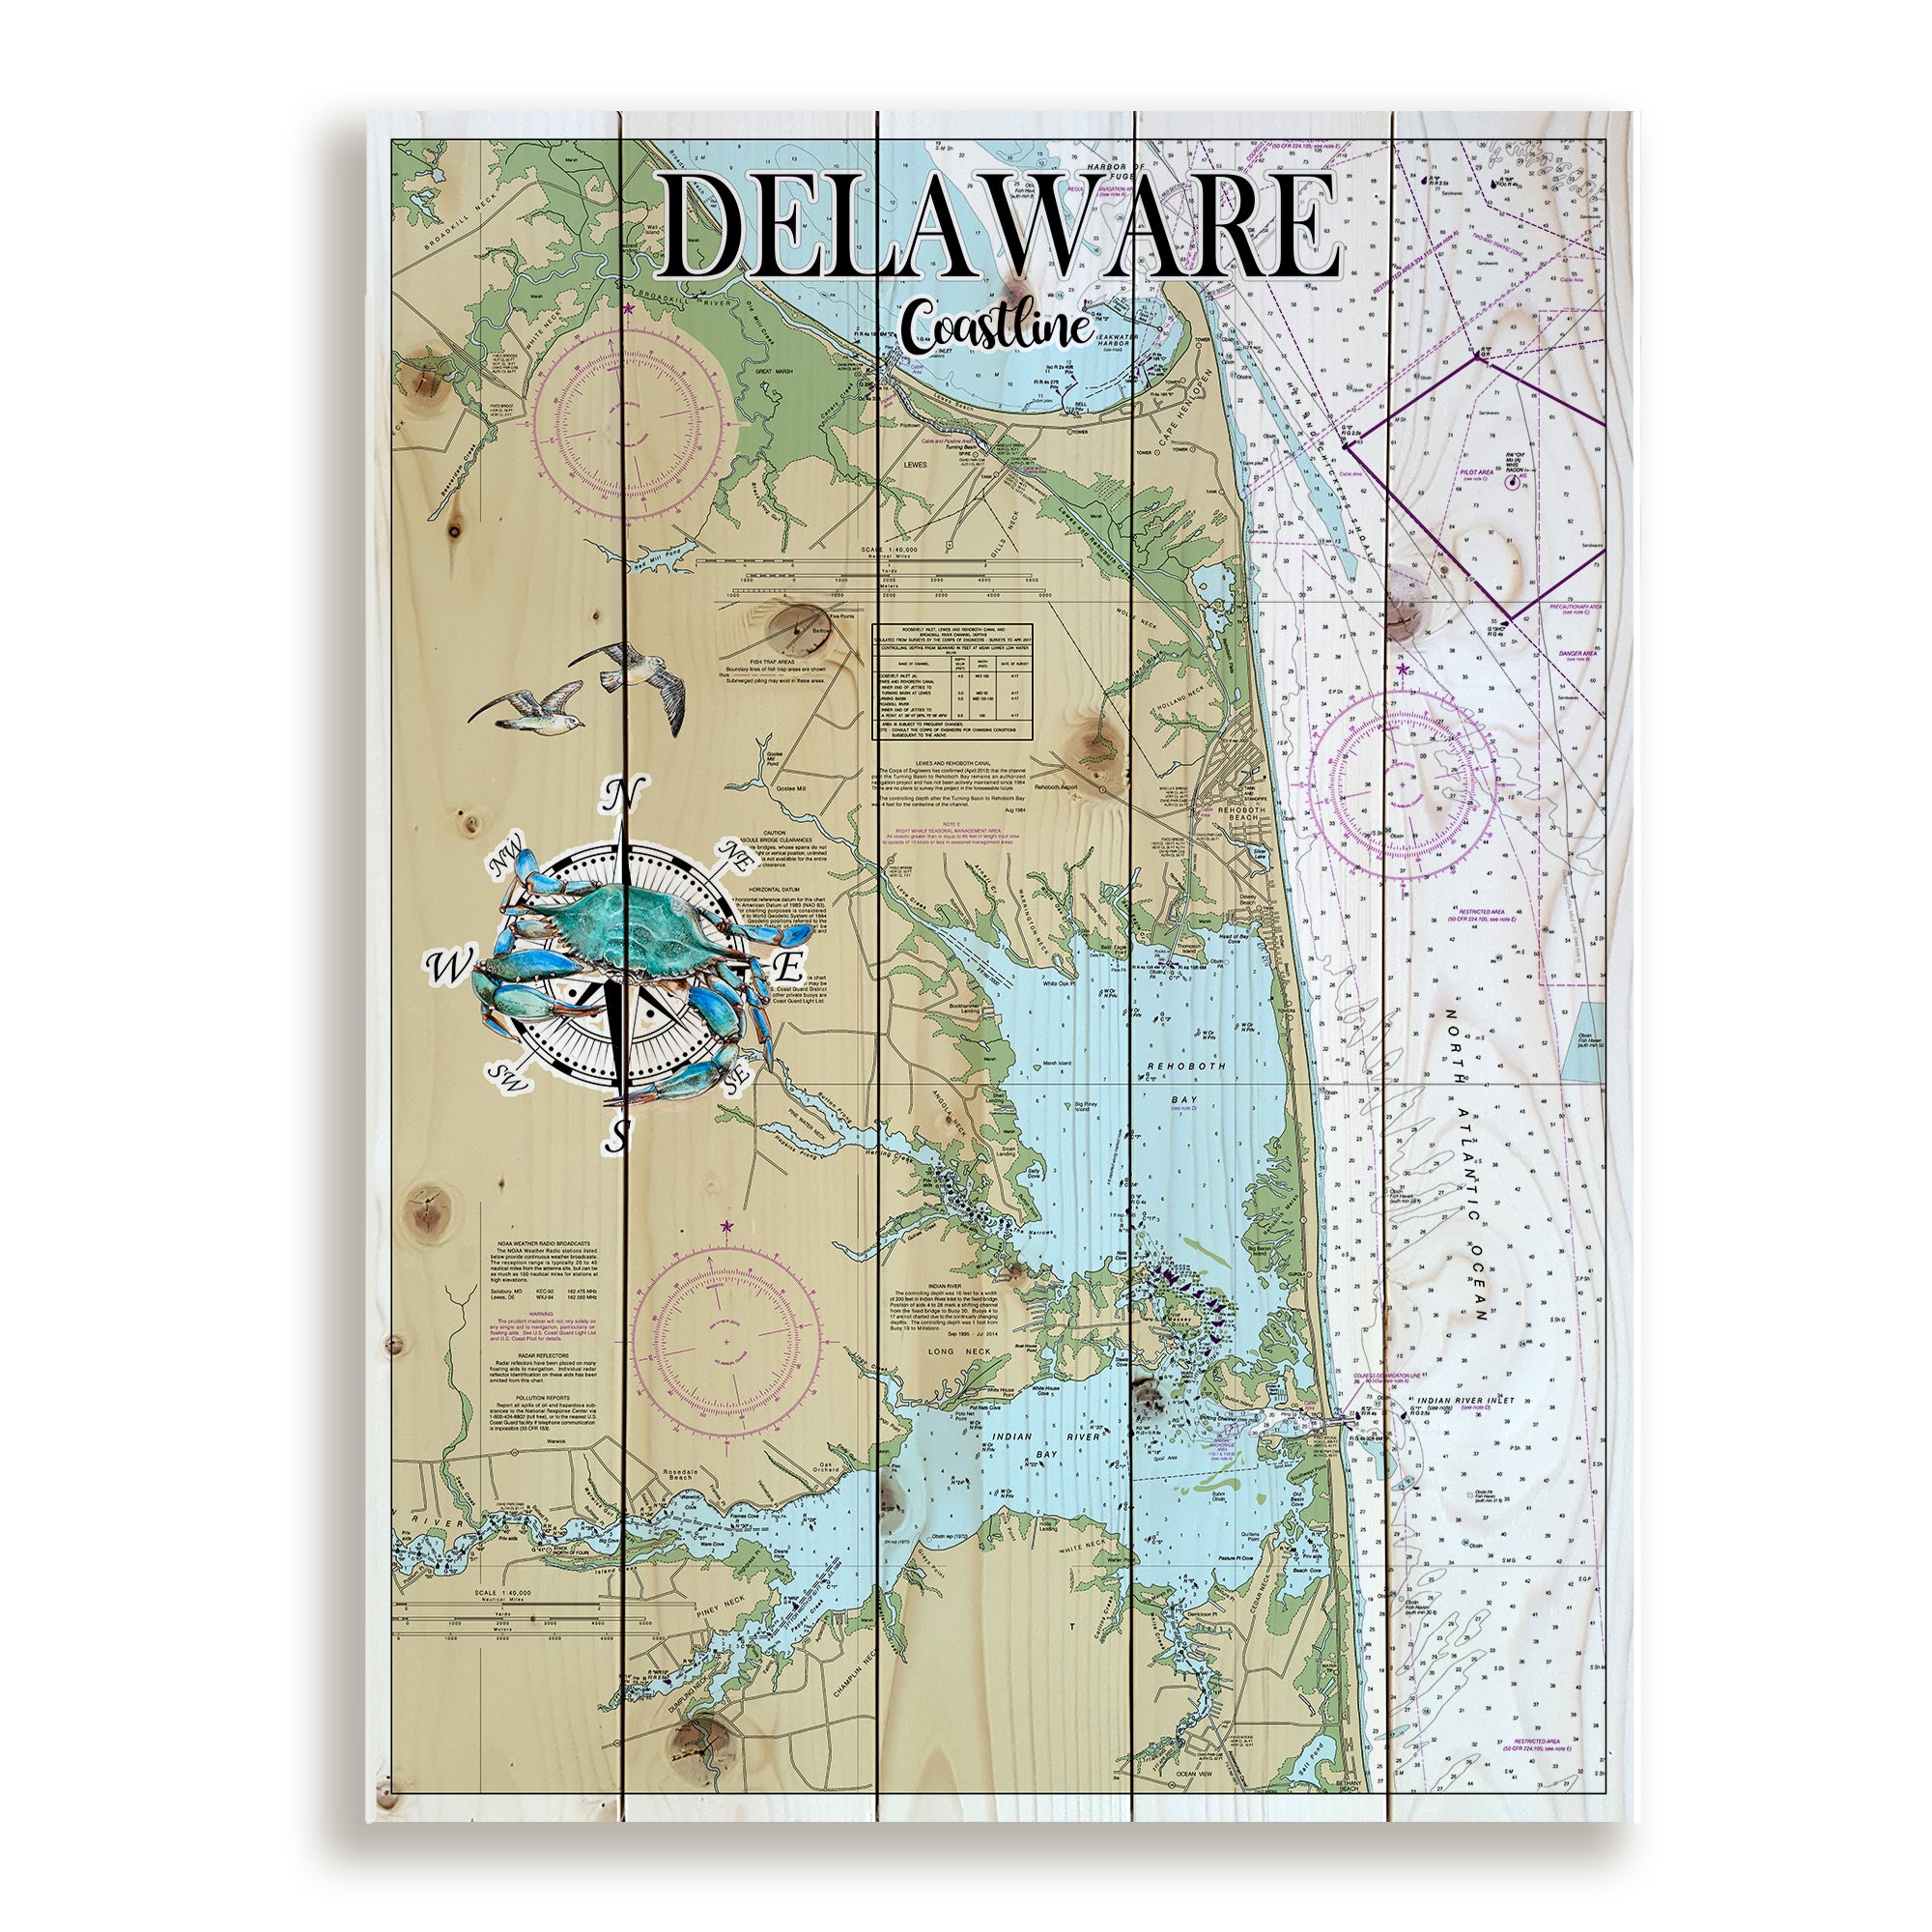 Delaware Coastline, DE Pallet Map